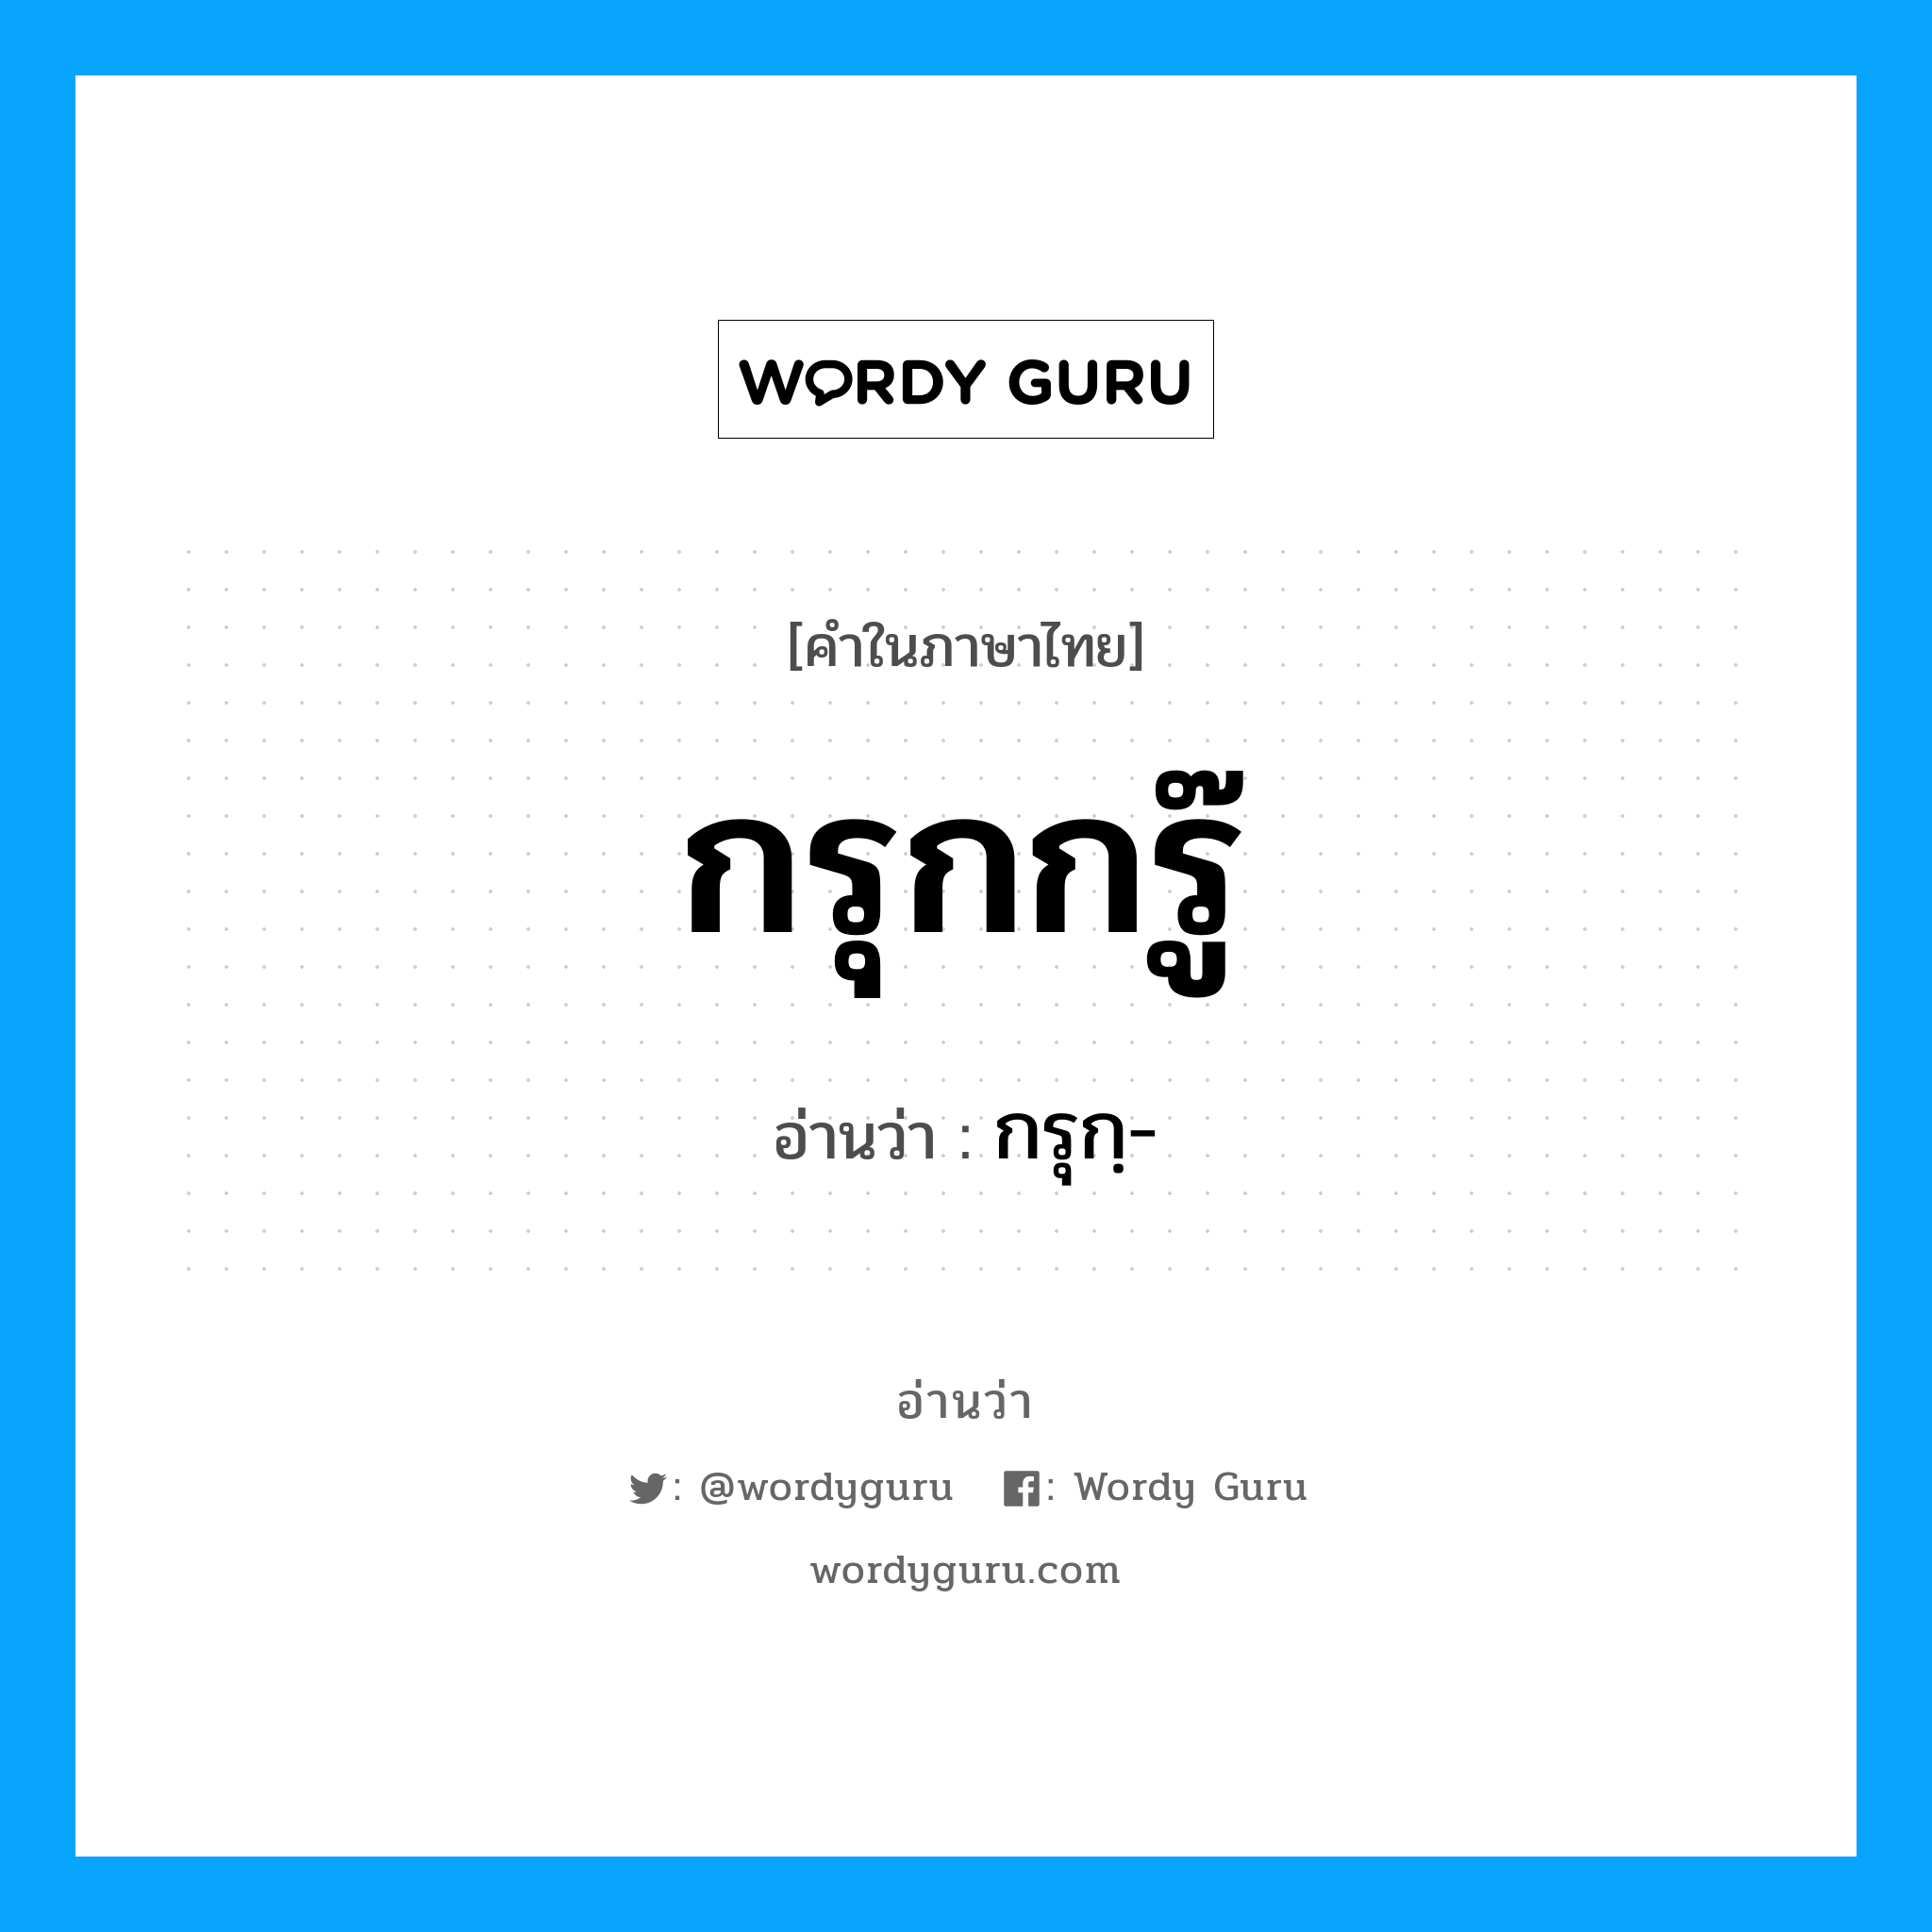 กรุกฺ- เป็นคำอ่านของคำไหน?, คำในภาษาไทย กรุกฺ- อ่านว่า กรุกกรู๊